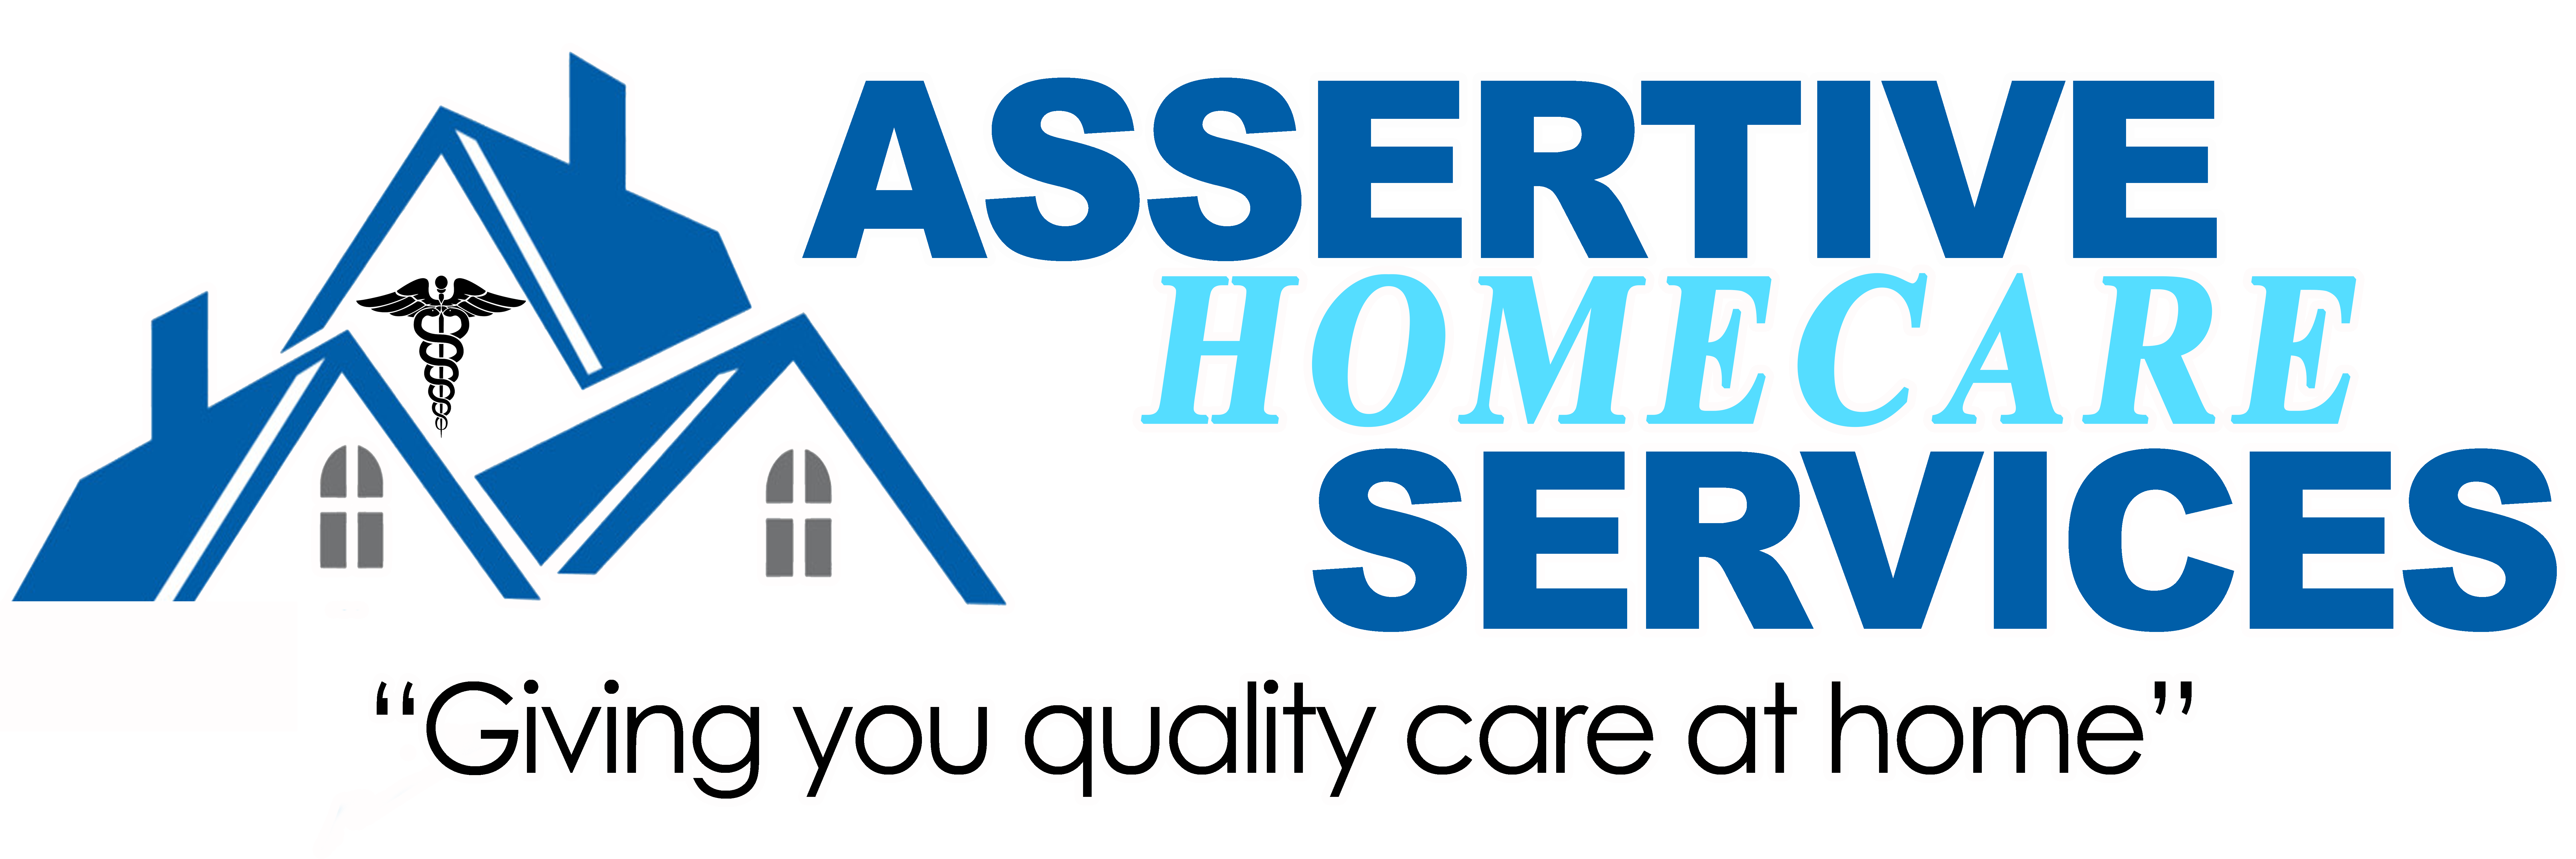 Assertive Care At Home, Inc. at La Mesa, CA